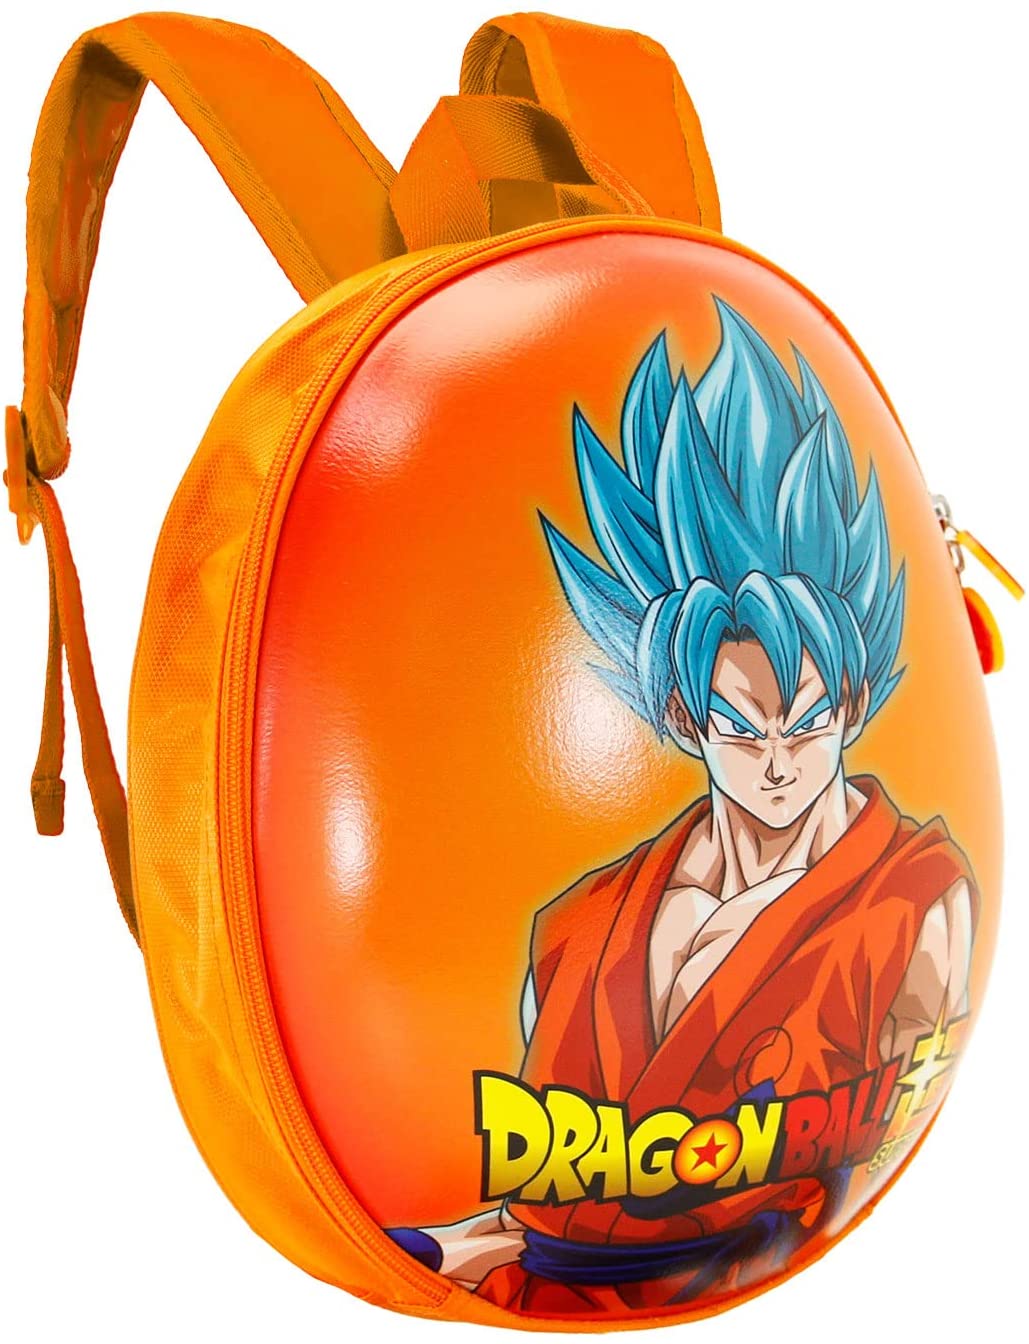 Dragon Ball Vegeta is Back-Eggy Backpack, Orange